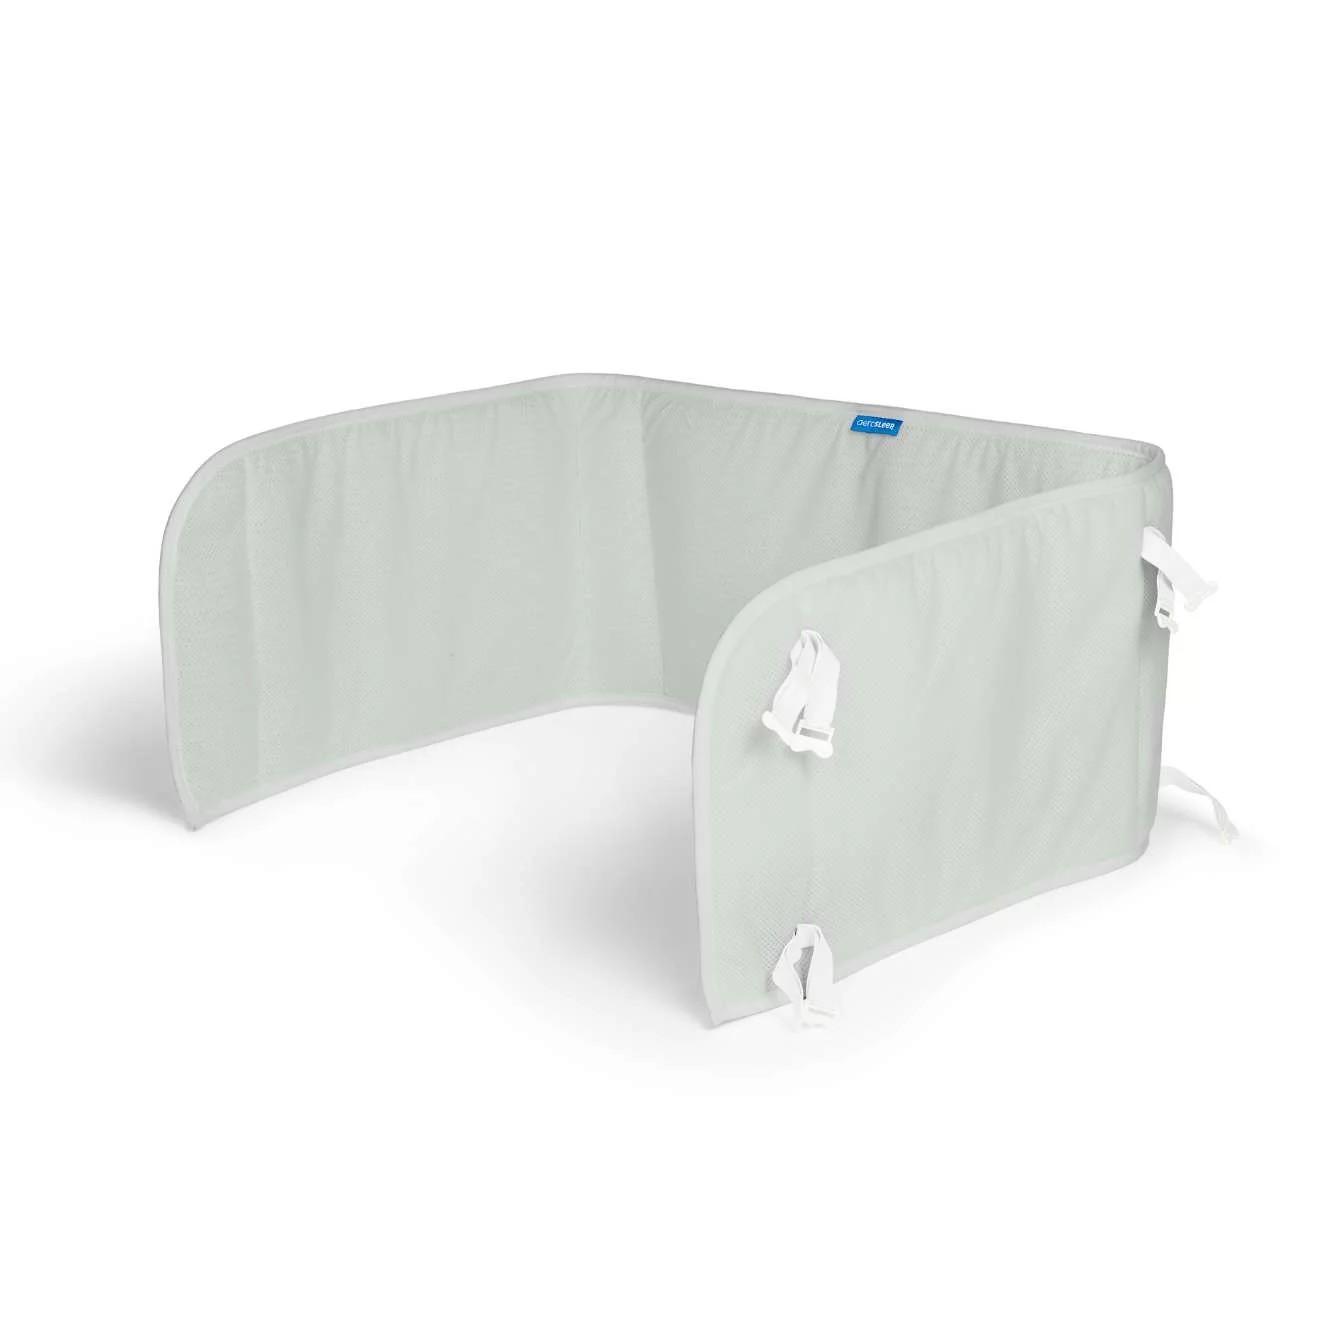 Aerosleep - Sleep safe bed bumper stone - 60x180